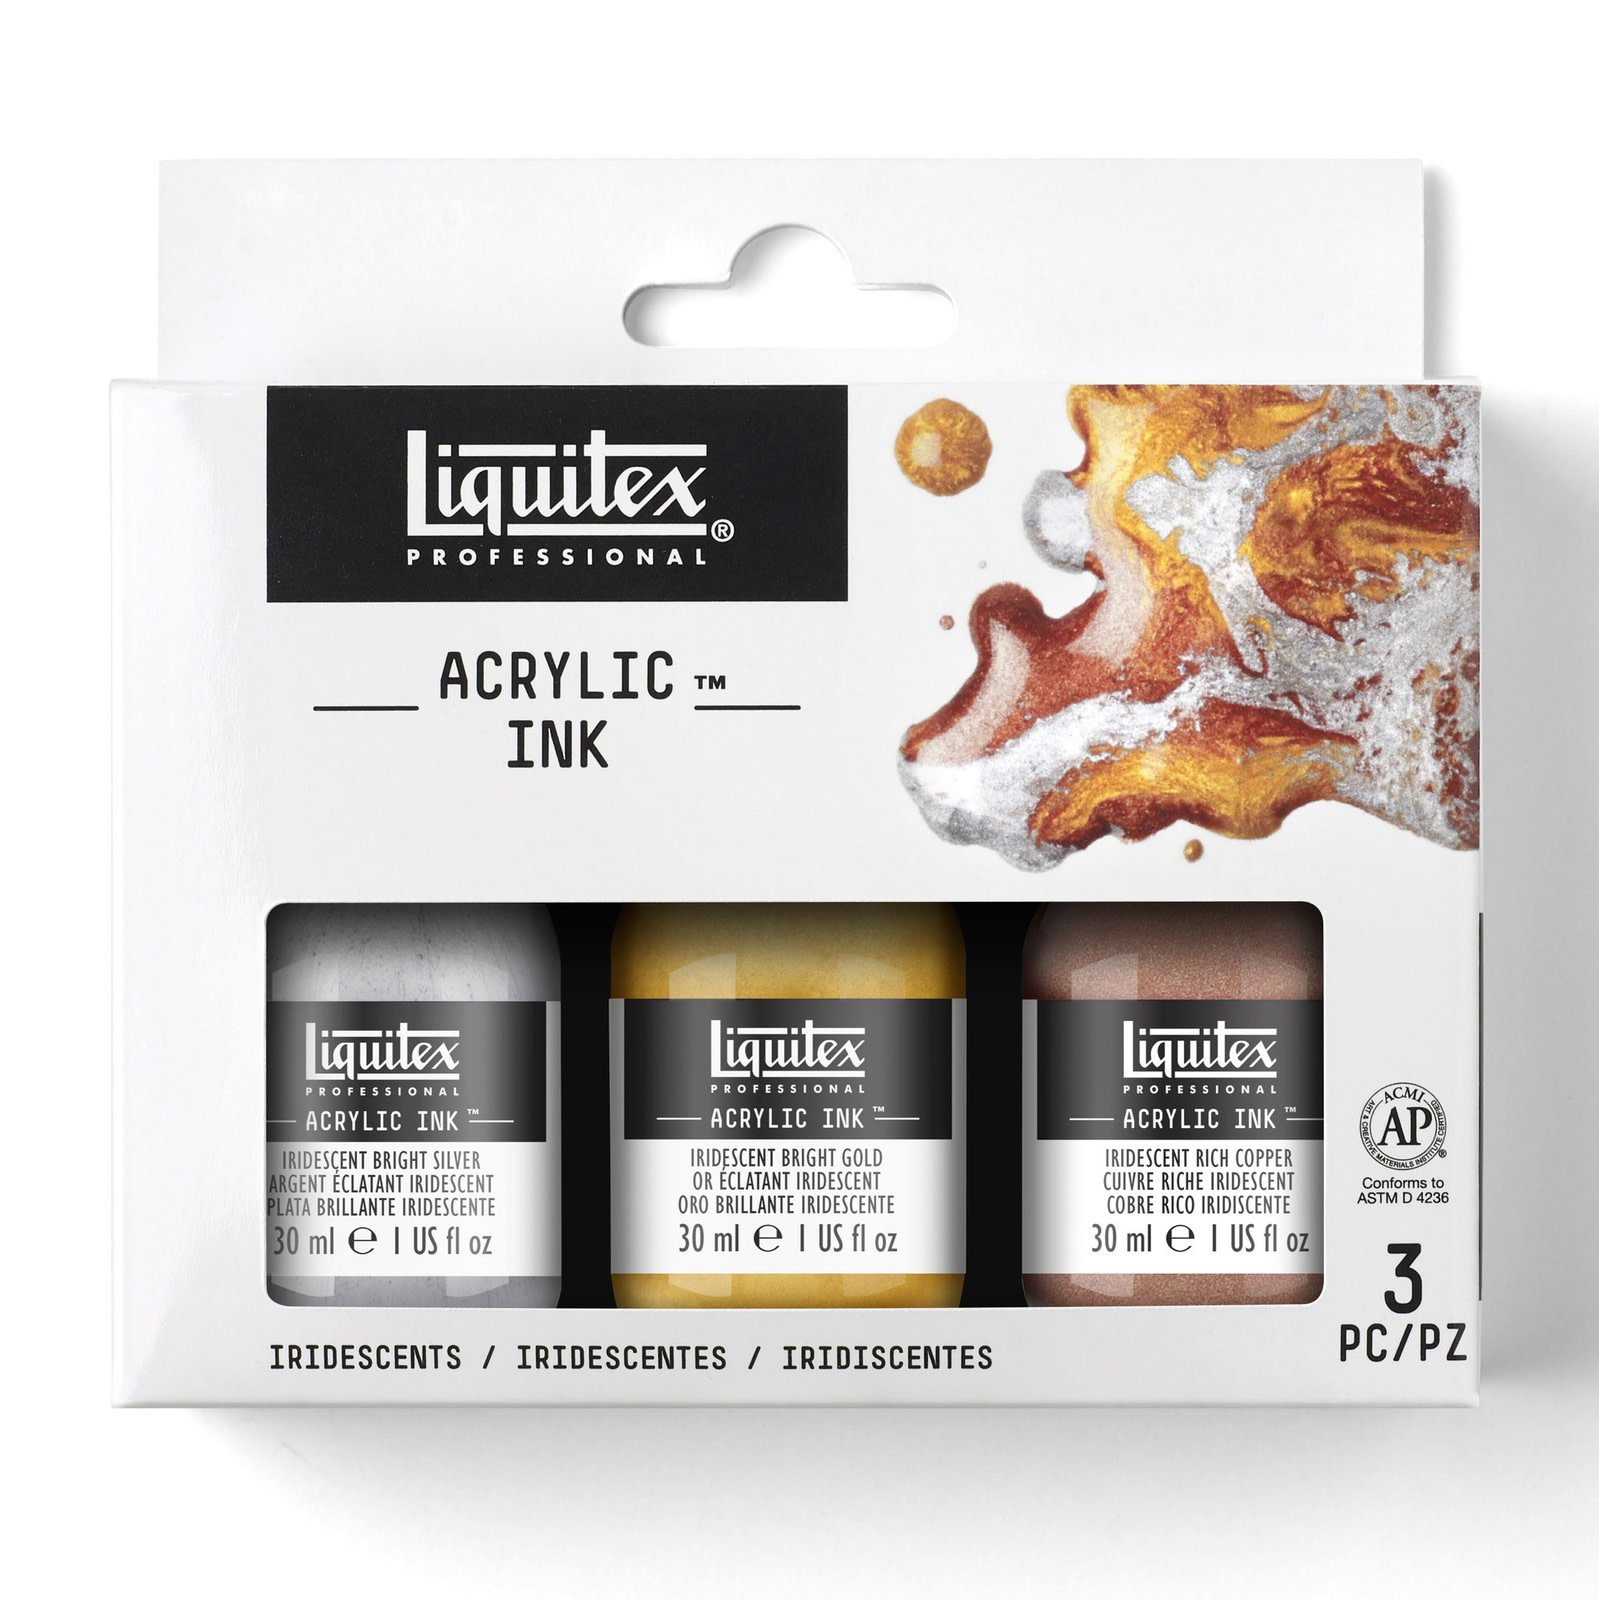 Liquitex Professional Acrylic Ink Sets, 3-Color Iridescent Set - 30ml Jars